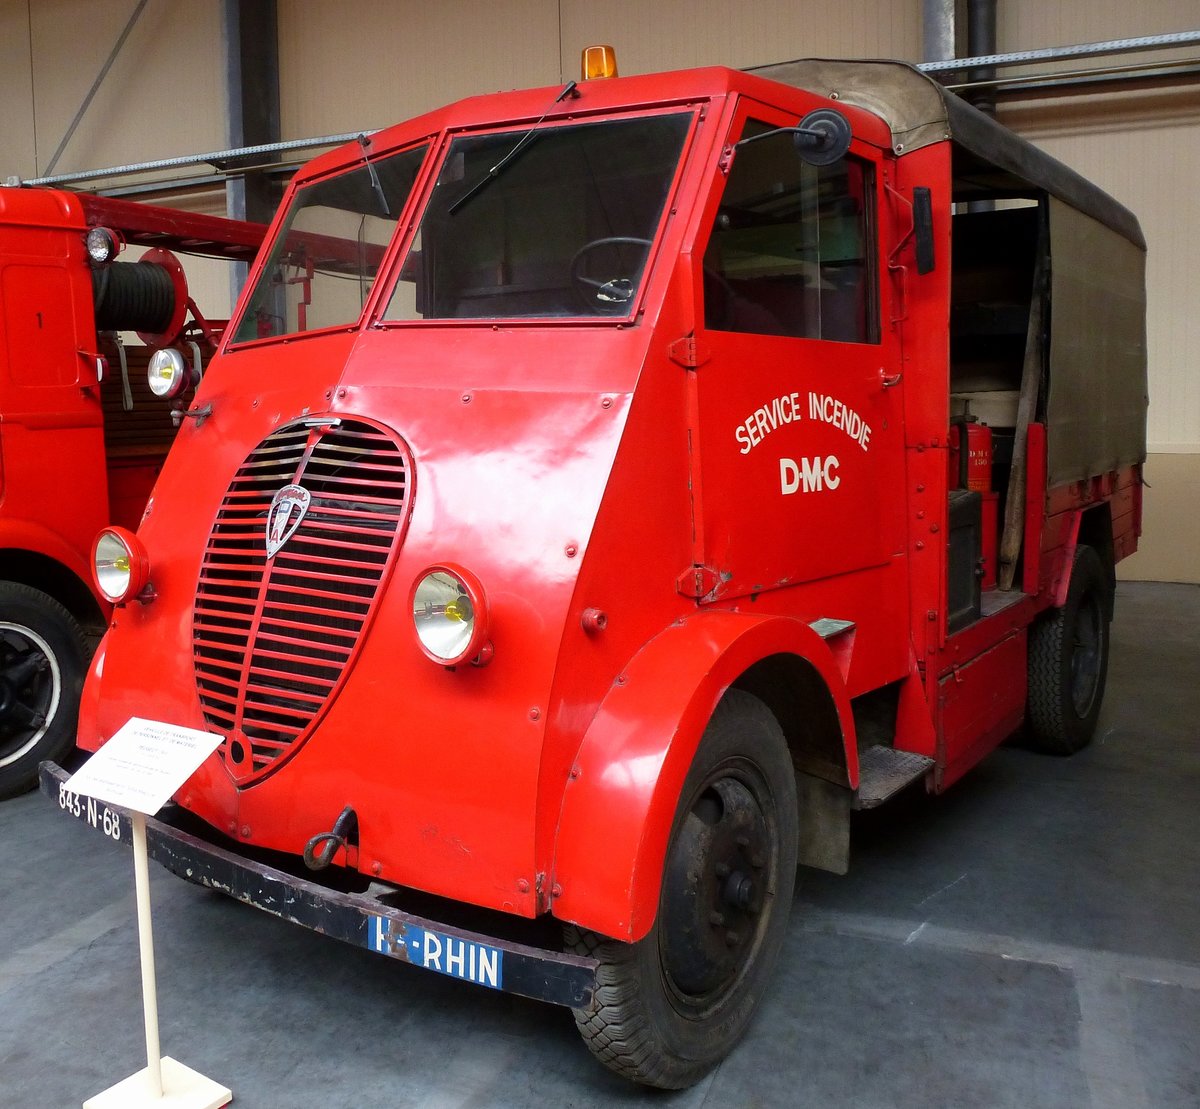 Peugeot DMA, Feuerwehrtransportwagen fr Personal und Gerte, gebaut von 1941-46, Feuerwehrmuseum Vieux-Ferrette, Mai 2016